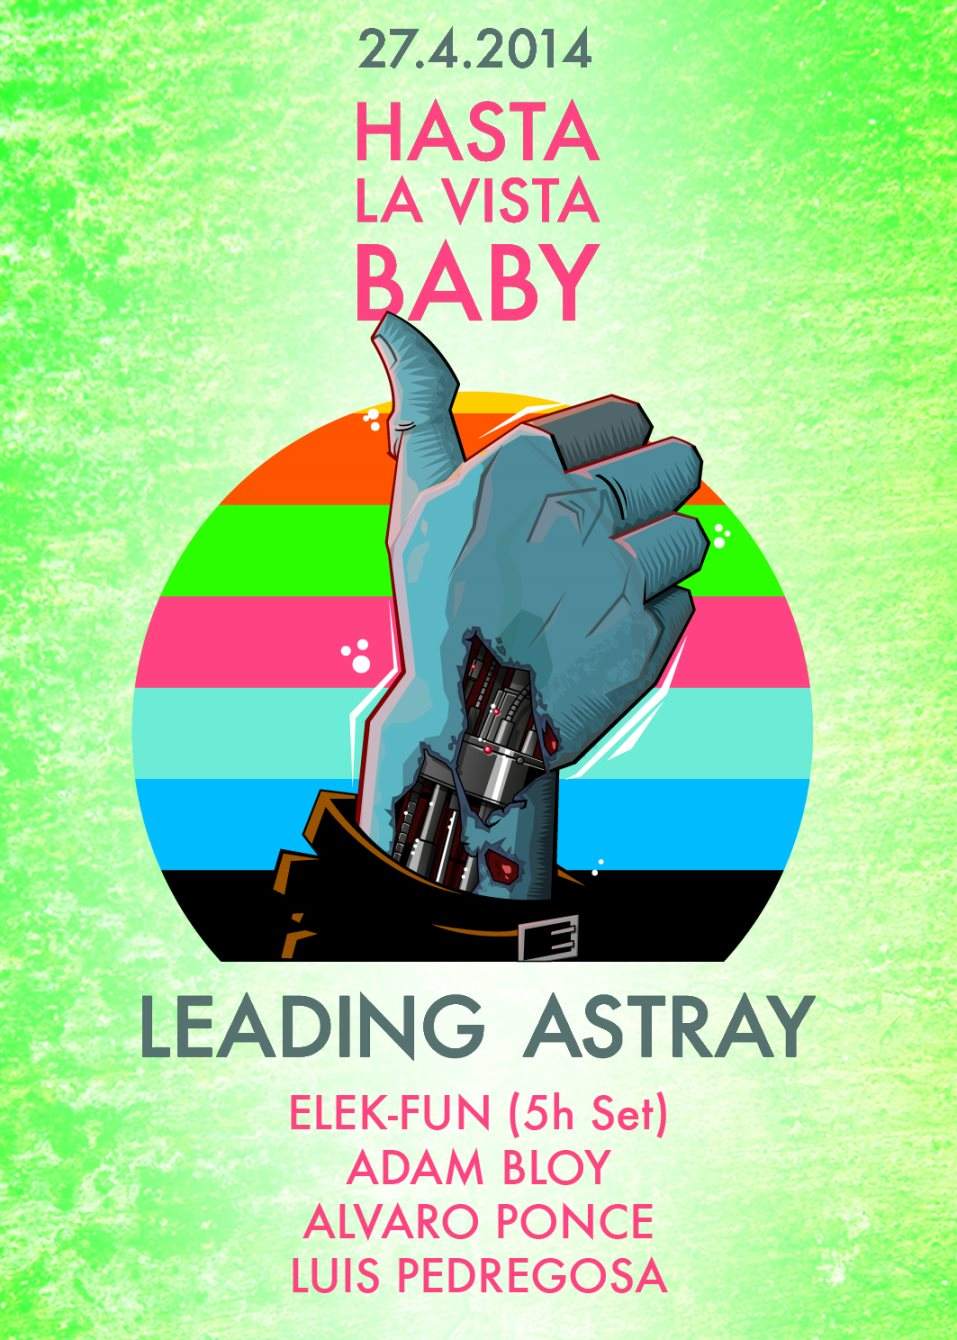 Leading Astray presents: Hasta LA Vista Baby w\ Elek-fun - 5h set, Adam Bloy & Alvaro Ponce - Página frontal